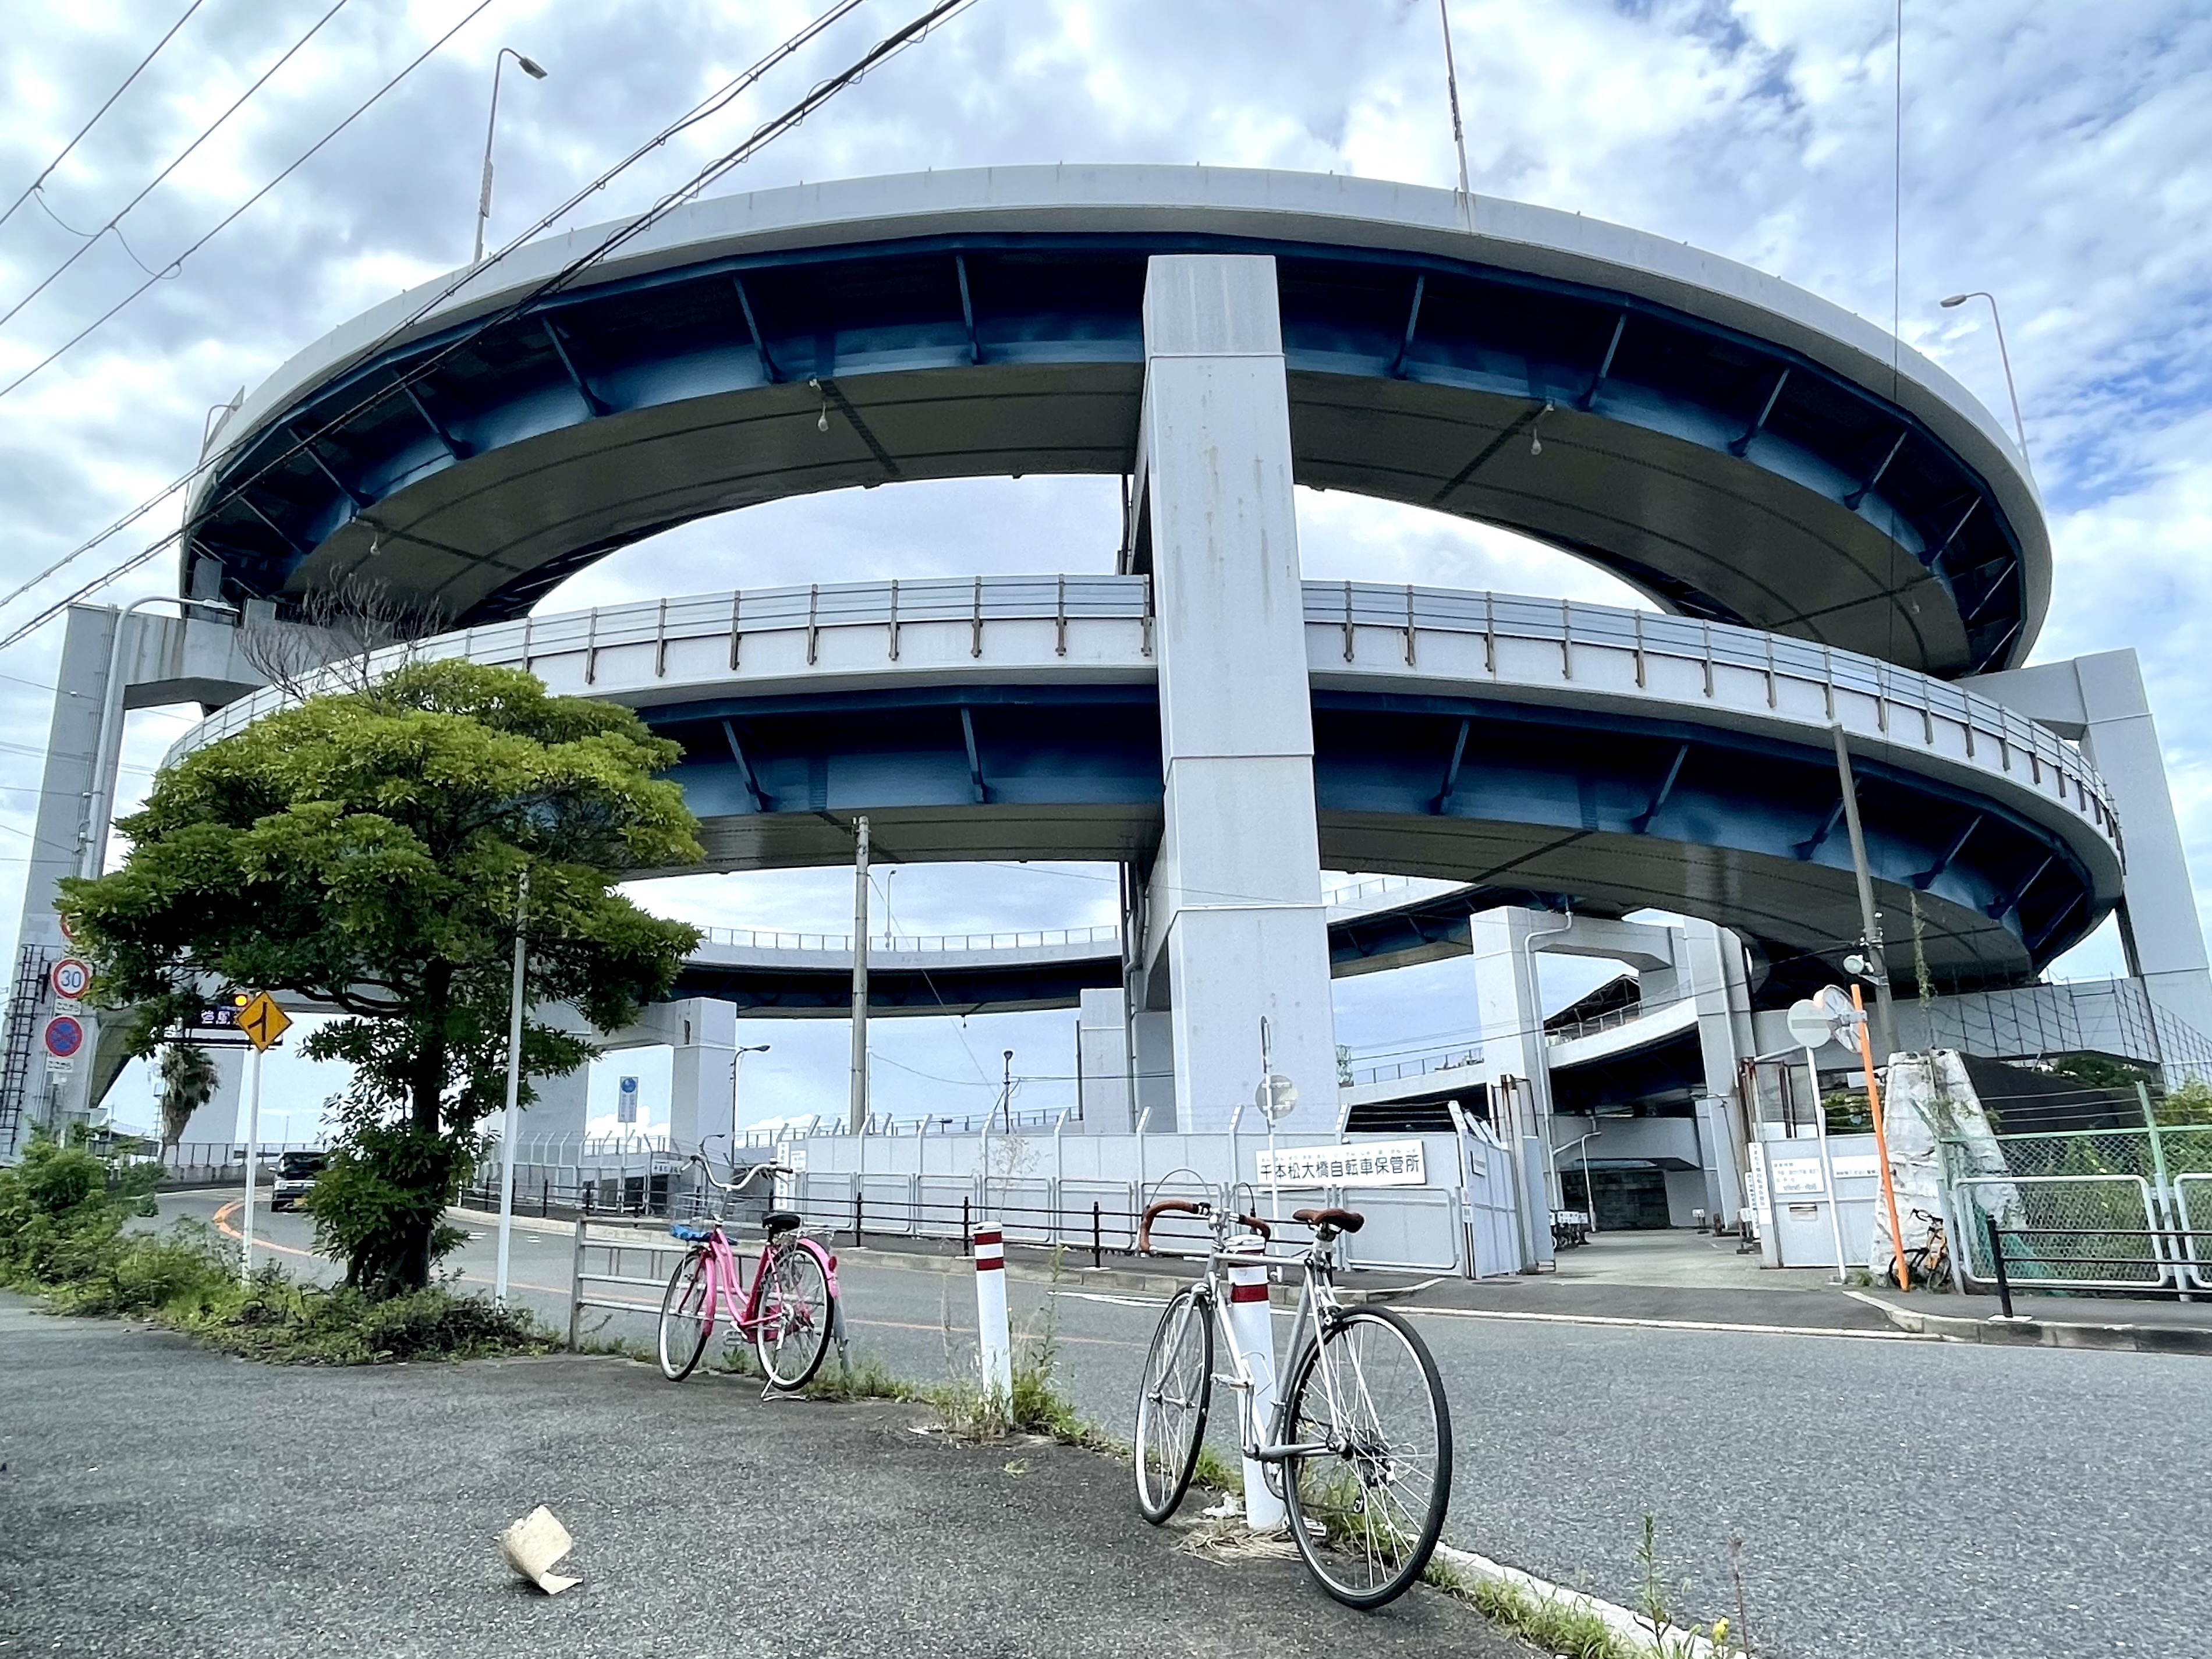 【大阪府】沖縄気分満載の大阪市大正区から、山・船・橋、そして純温泉を楽しむ自転車小旅行